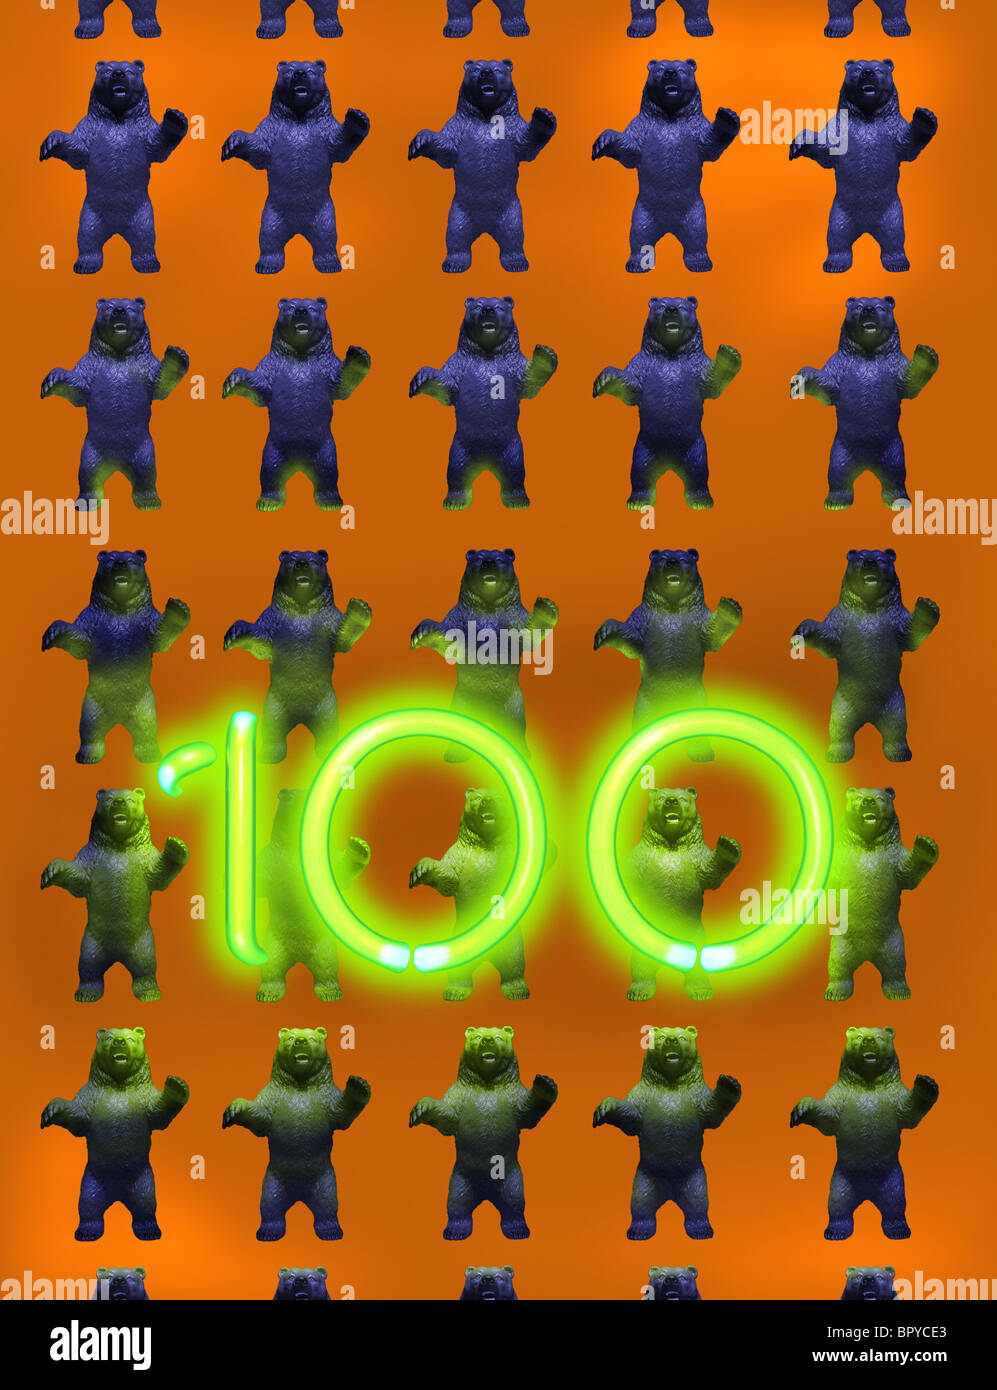 Numero 100 illuminato di fronte a più righe di orsi su sfondo arancione Foto Stock